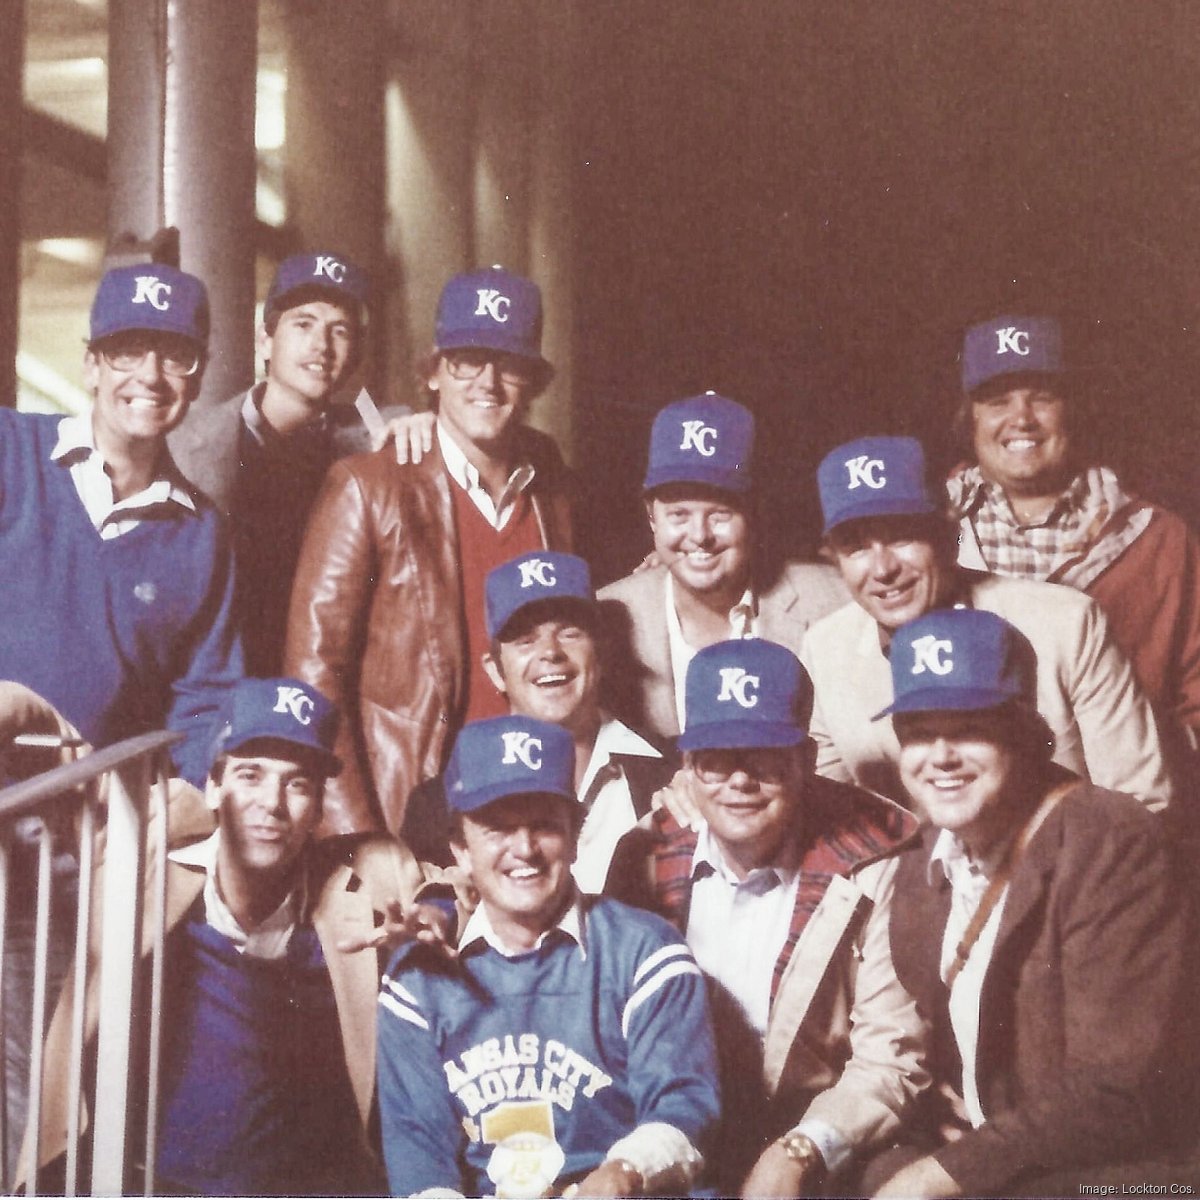 Baseball Team Sets, Kansas City Royals